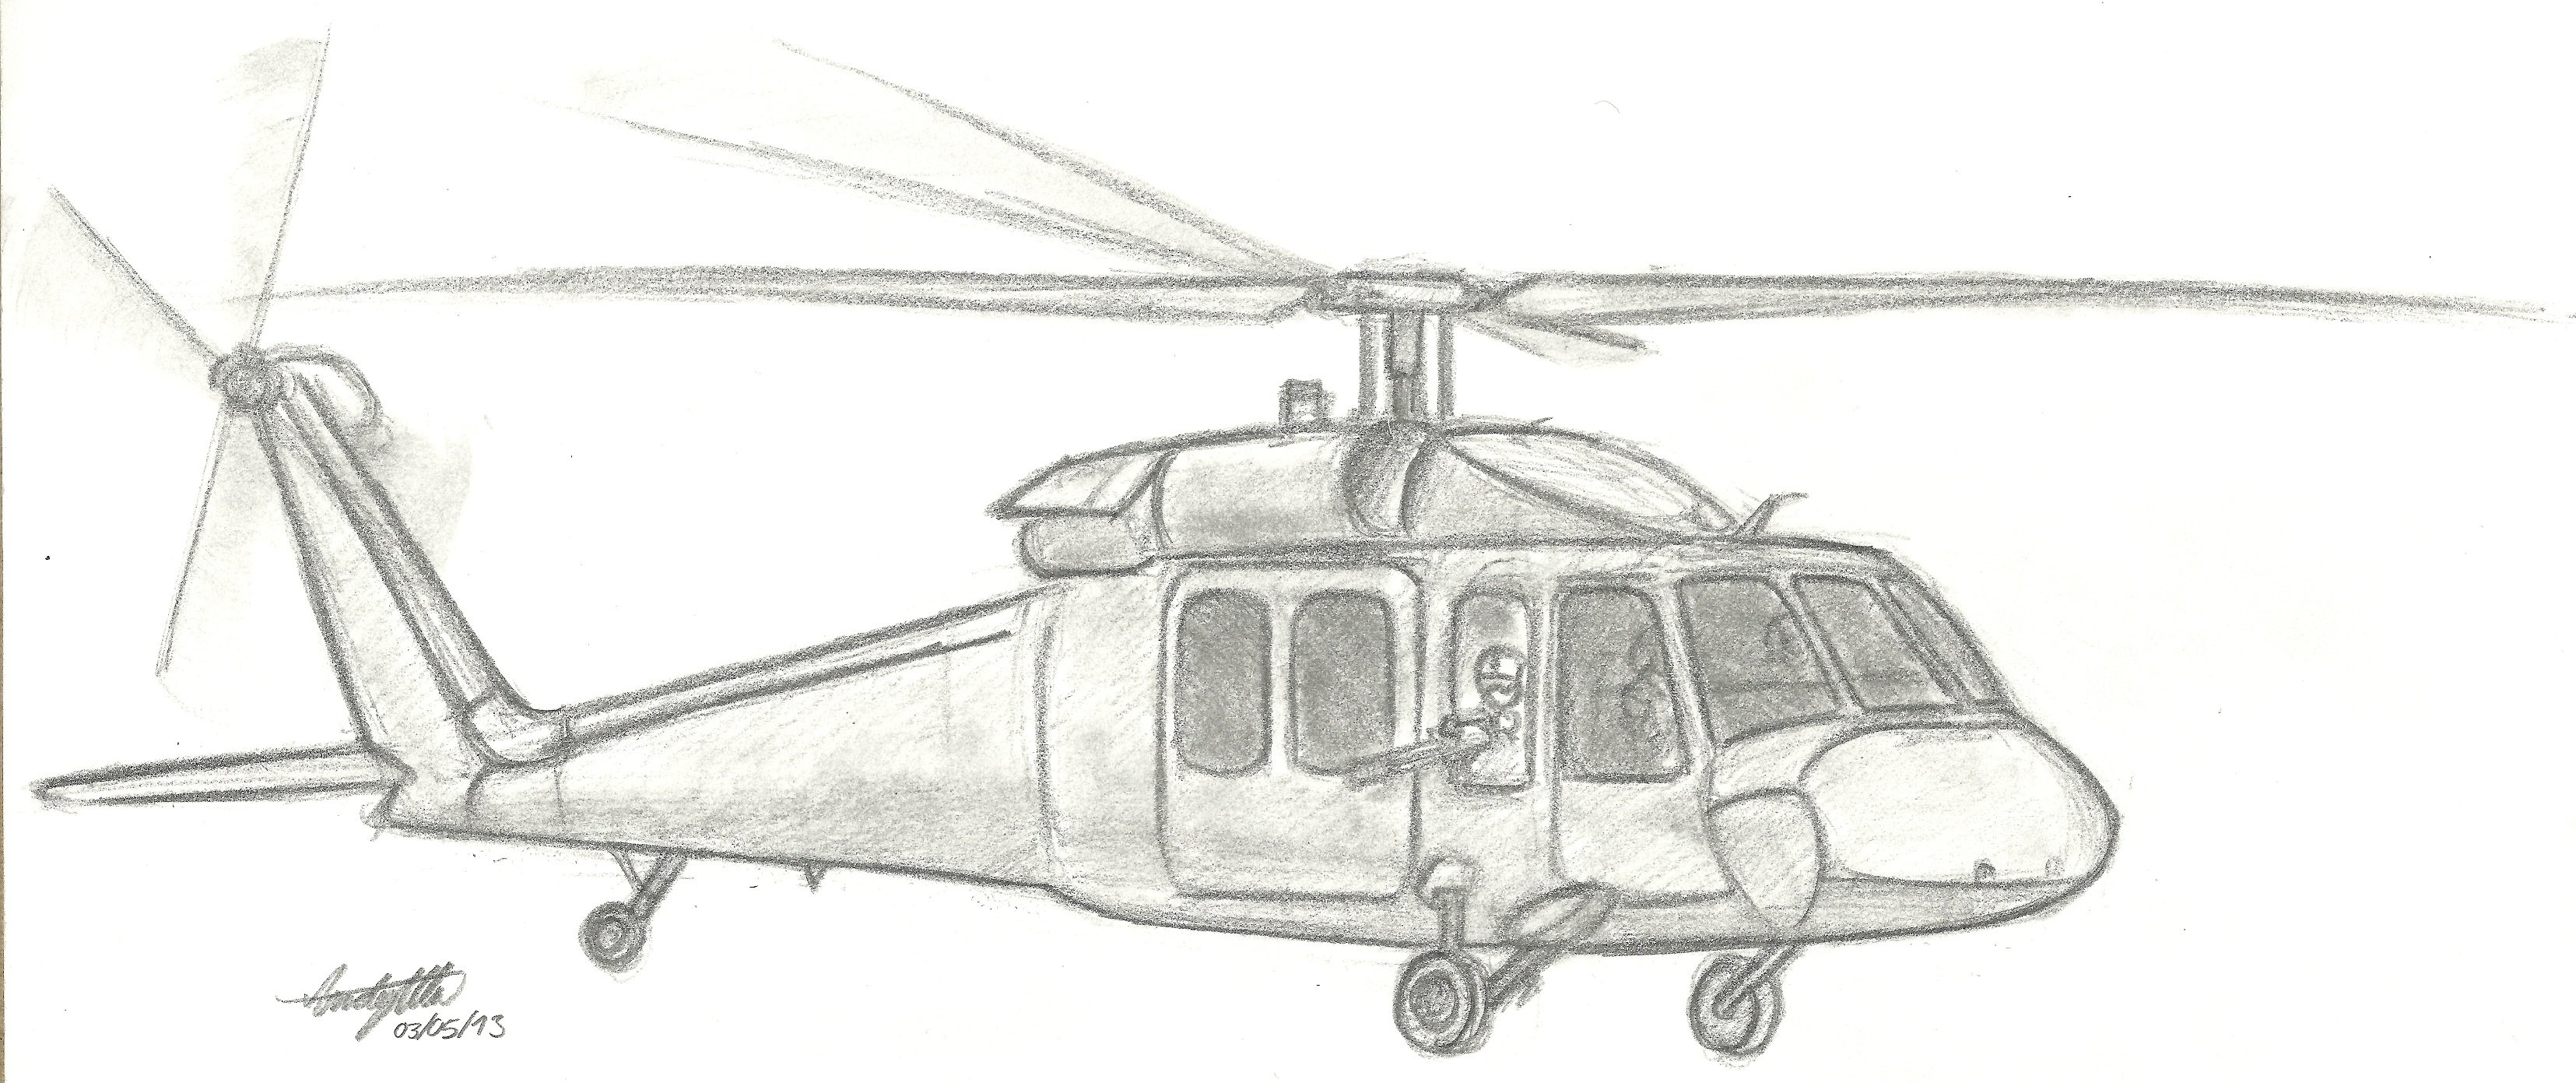 Раскраски военных вертолетов